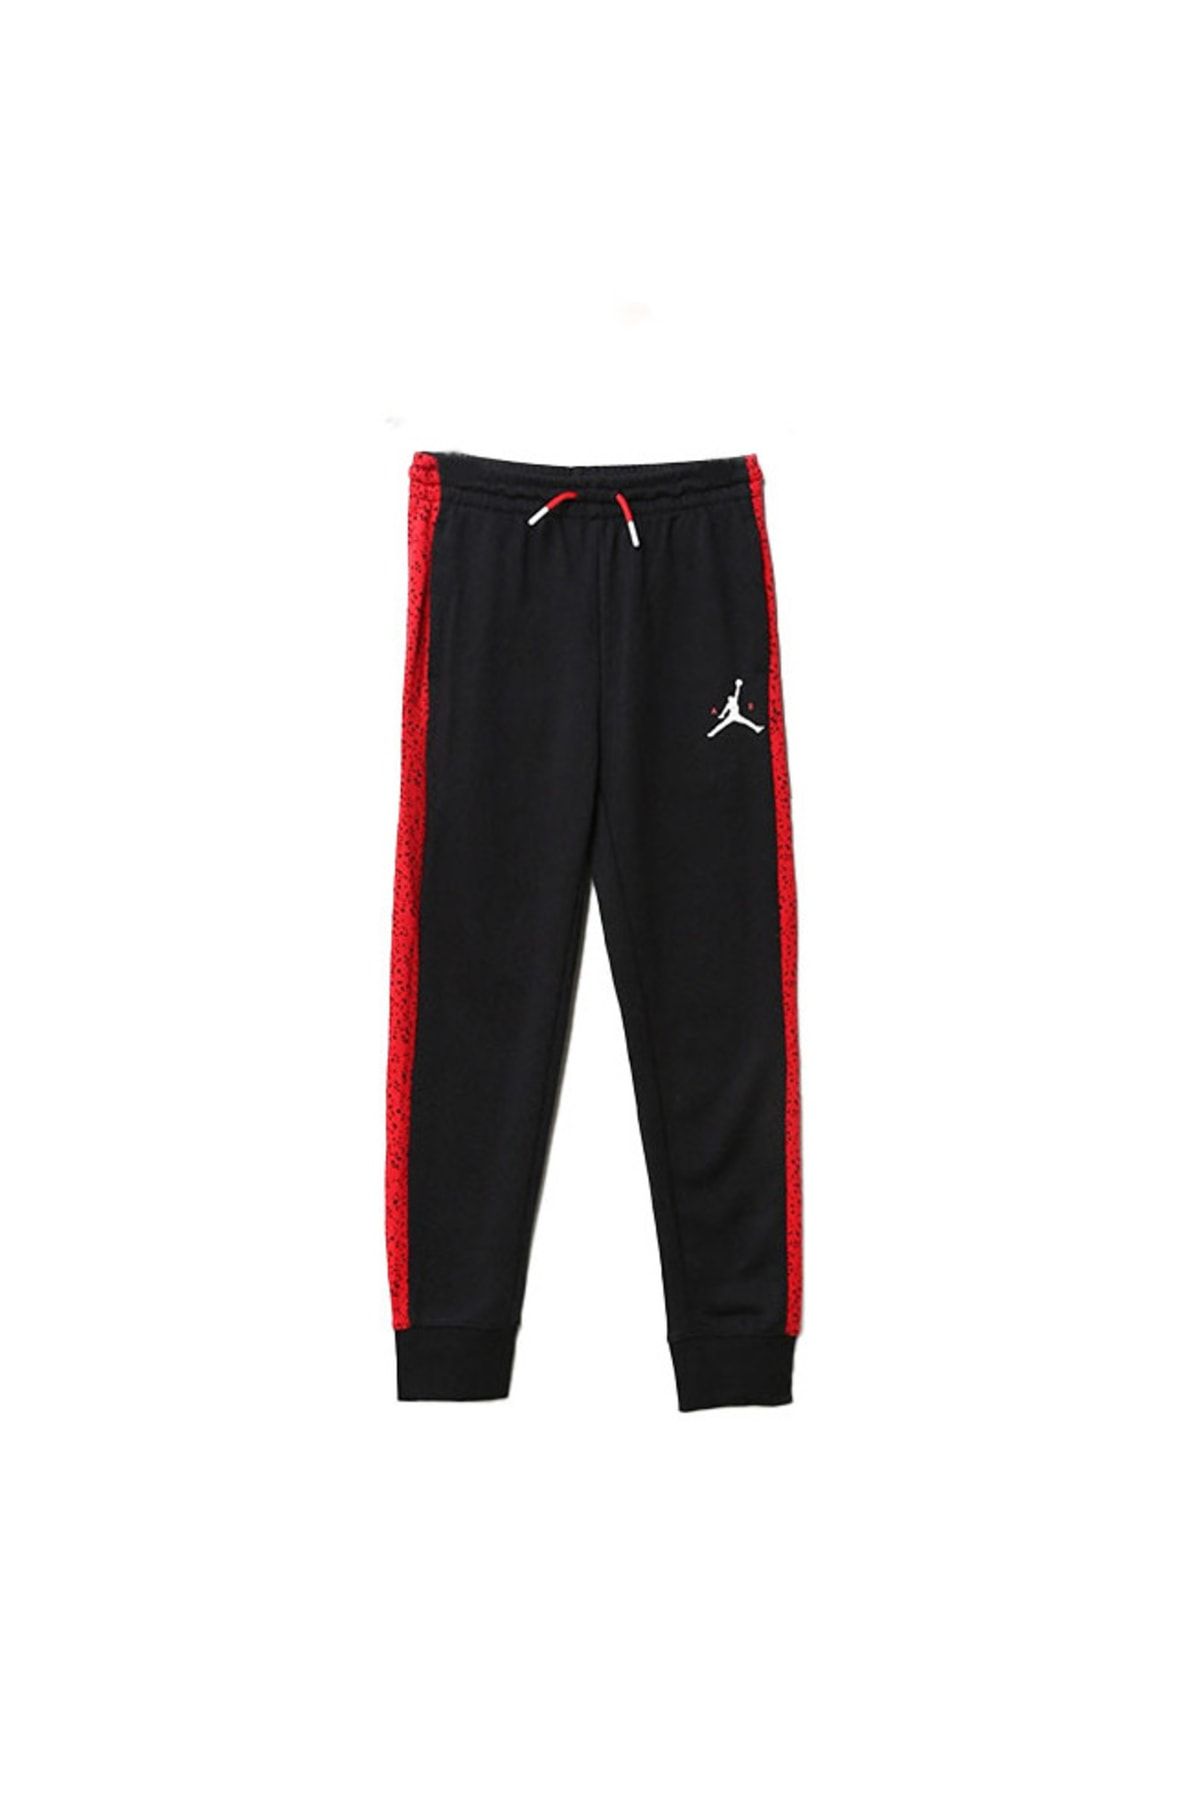 Nike Jordan Jdb Aır Speckle Ft Pant Erkek Çocuk Eşofman Altı 95b784-023